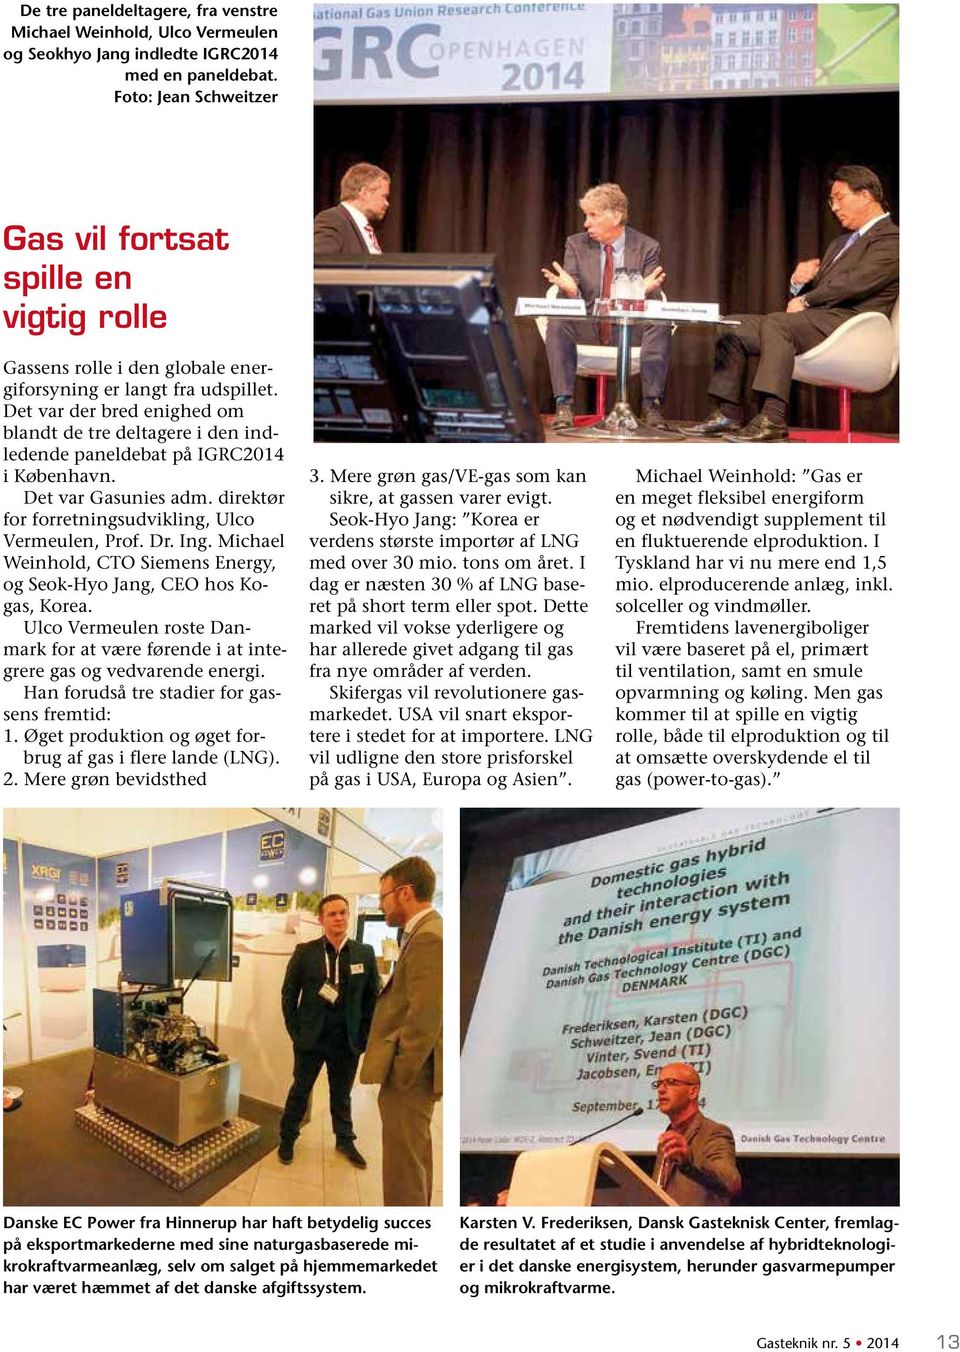 Det var der bred enighed om blandt de tre deltagere i den indledende paneldebat på IGRC2014 i København. Det var Gasunies adm. direktør for forretningsudvikling, Ulco Vermeulen, Prof. Dr. Ing.